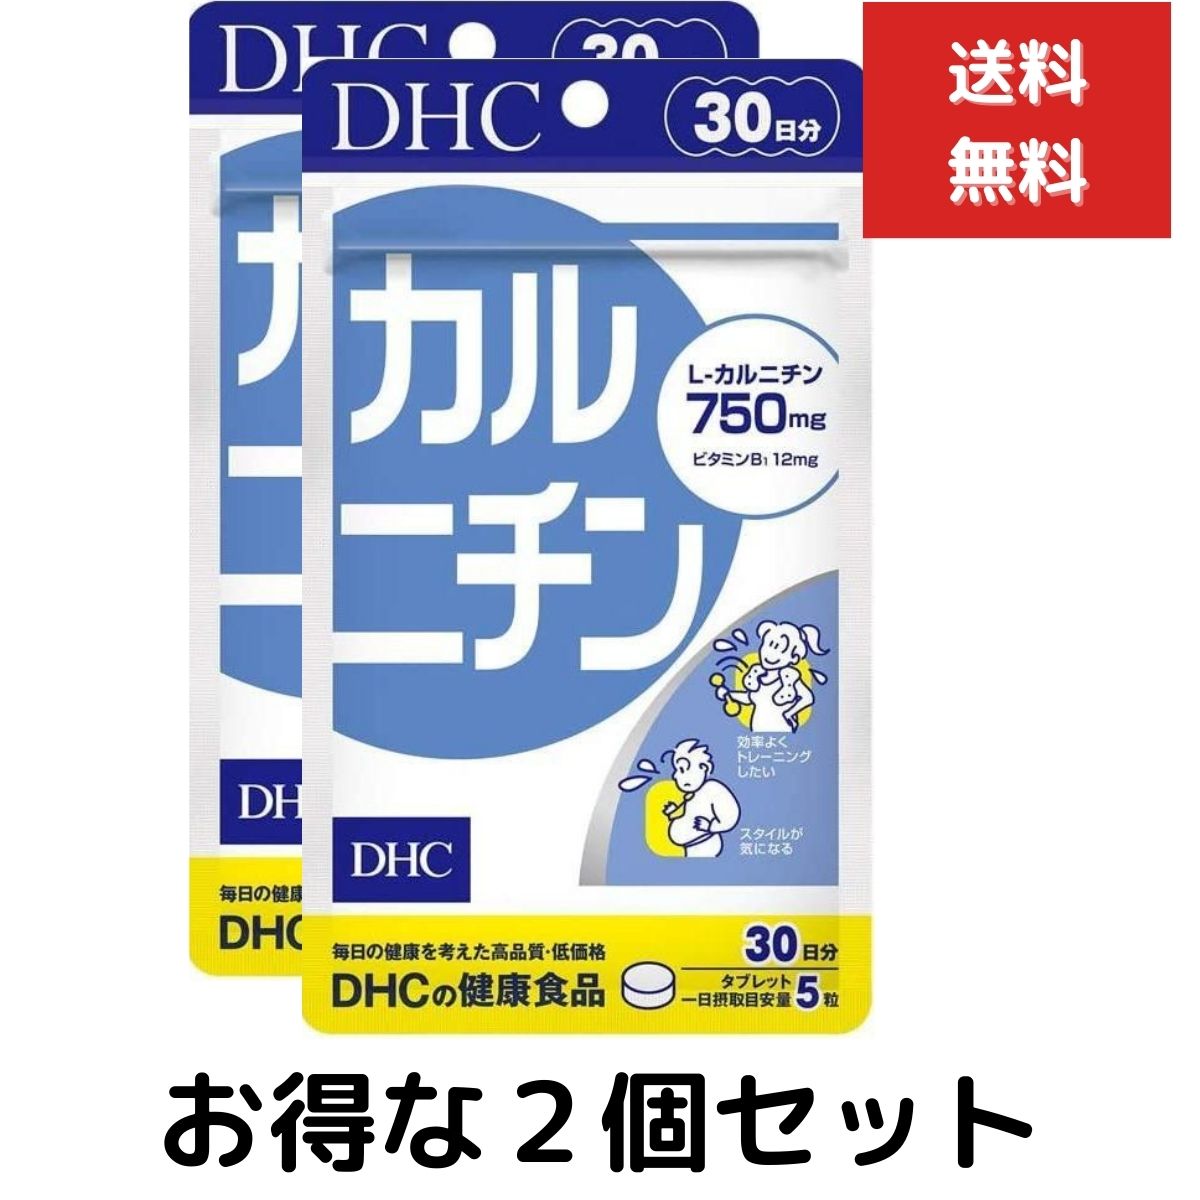 2個セット DHC サプリメント カルニチン 30日分 150粒 ディーエイチシー L カルニチン含有食品 IS01